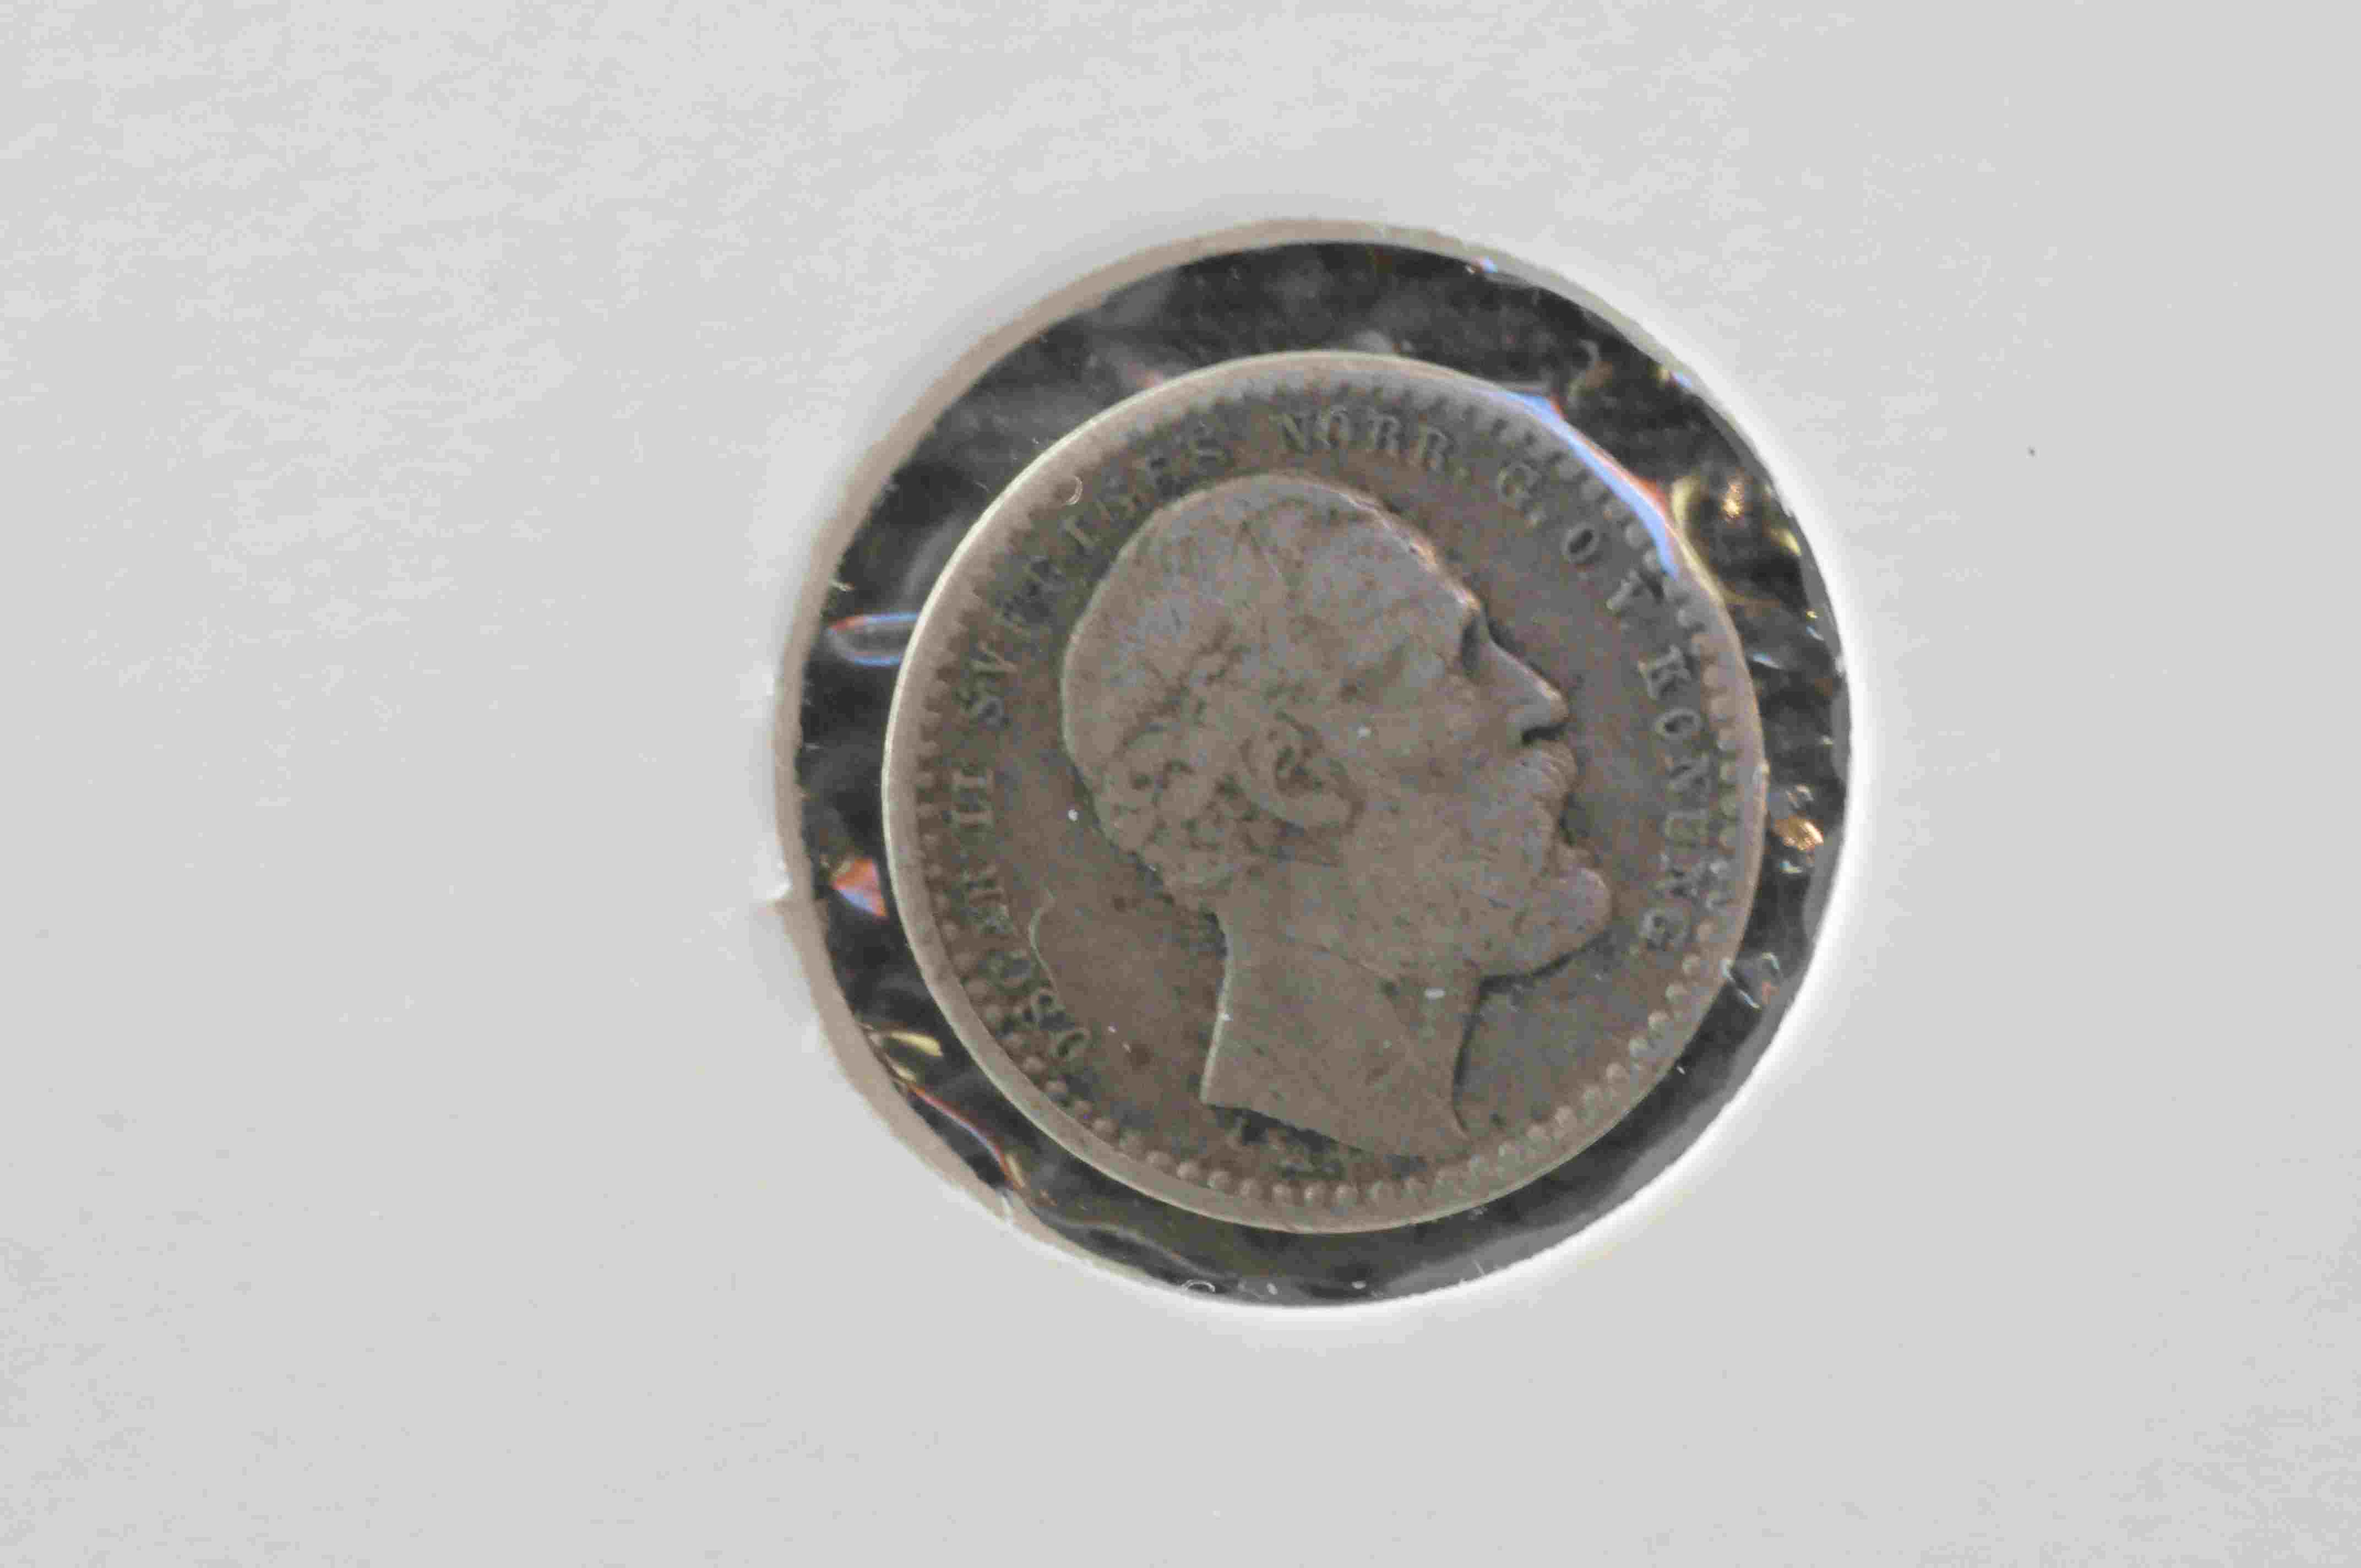 10ø Sve 1872 sølv kv1